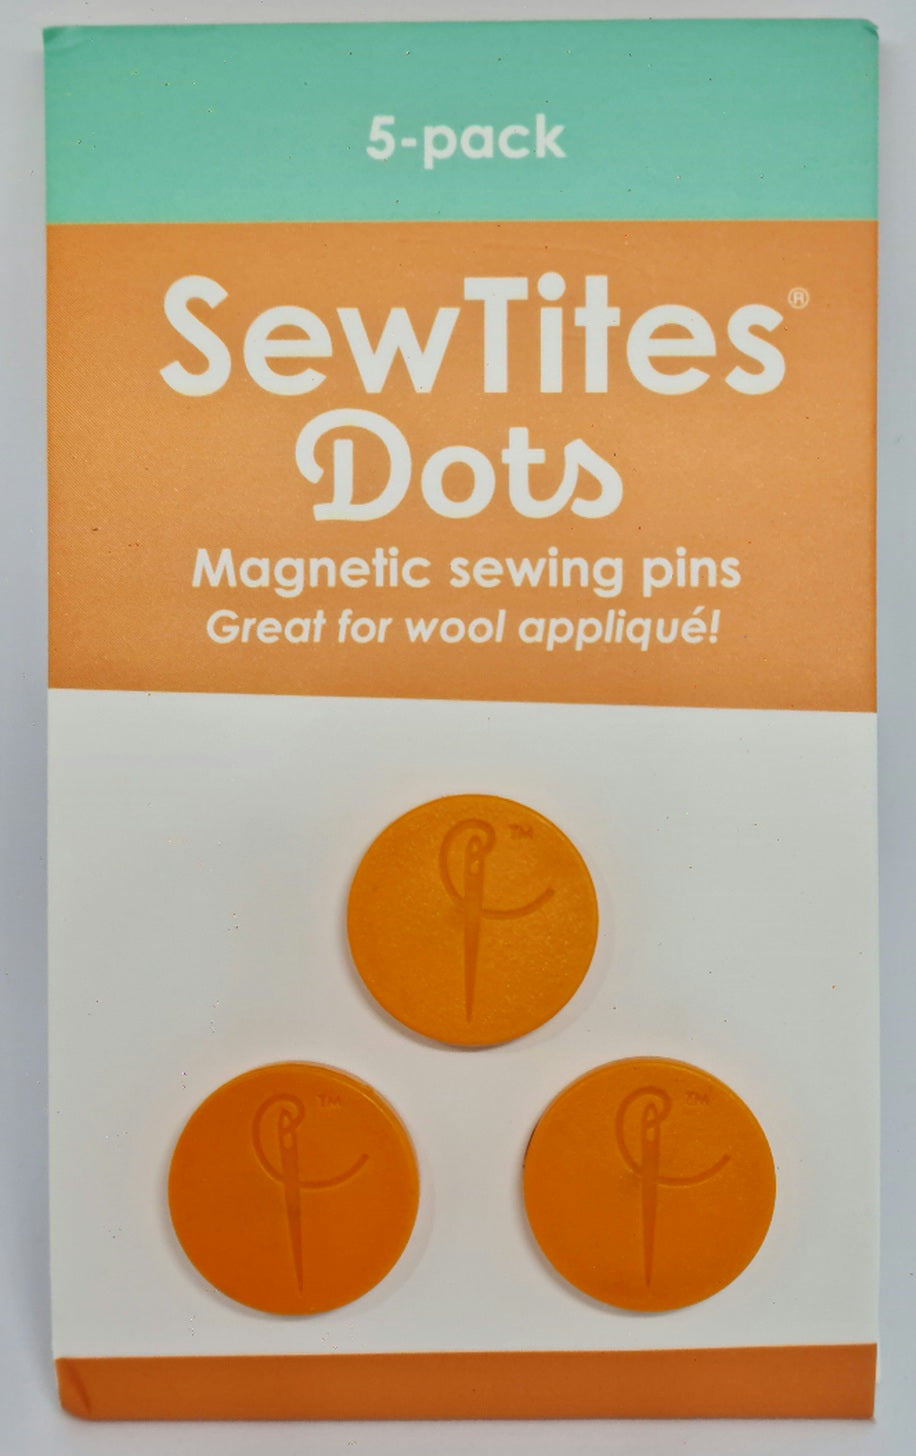 Sew Tites Dots x 5